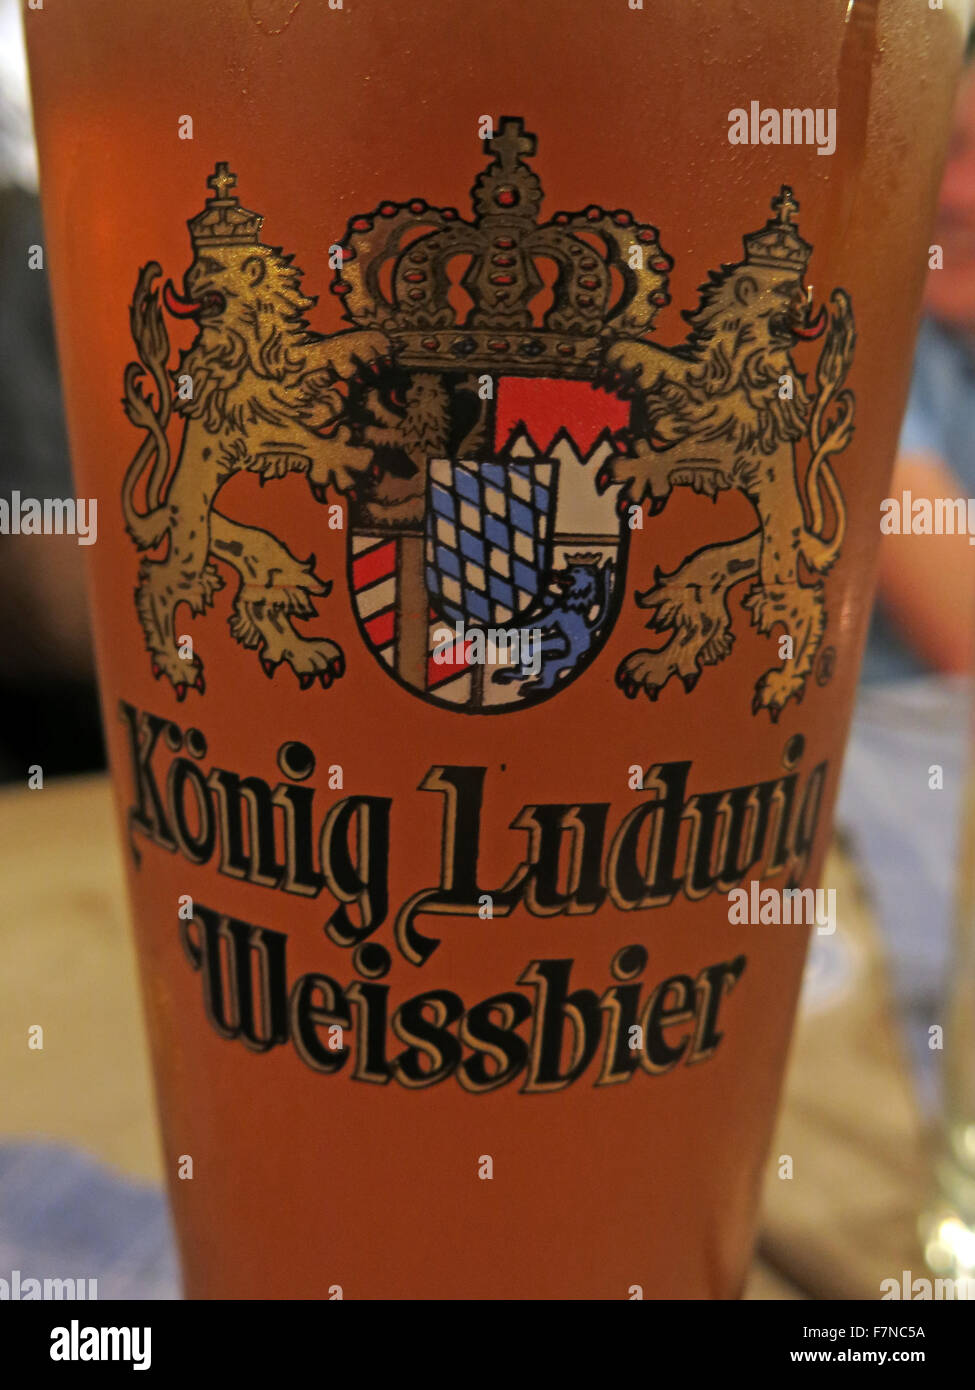 Ein Glas von König Ludwig Weißbier, München, Deutschland Stockfotografie -  Alamy